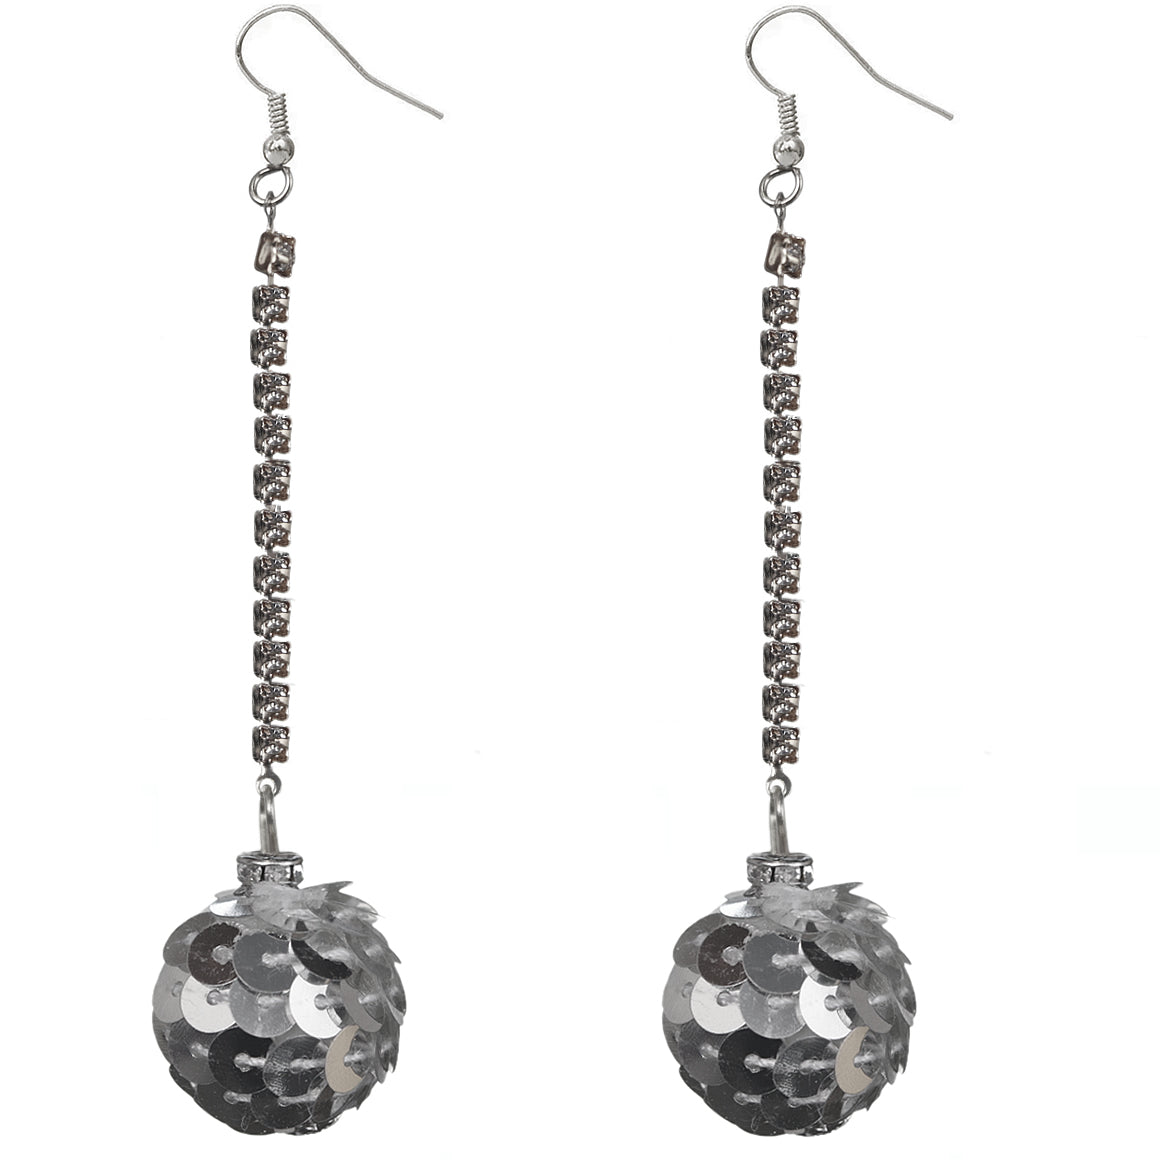 Silver Confetti Ball Chain Earrings